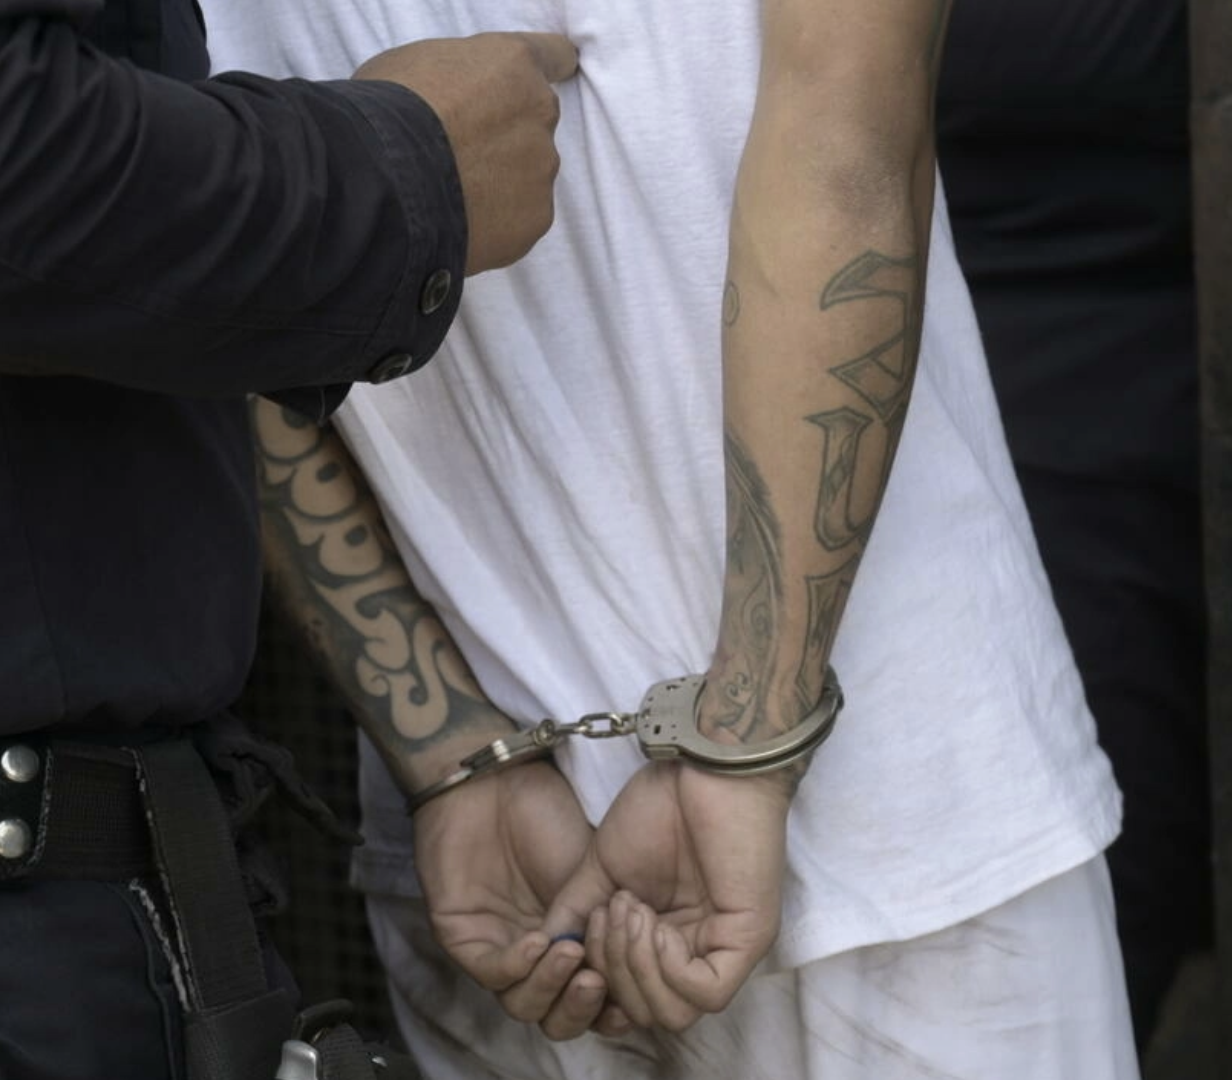 El Salvador gang crackdown reaches 50,000